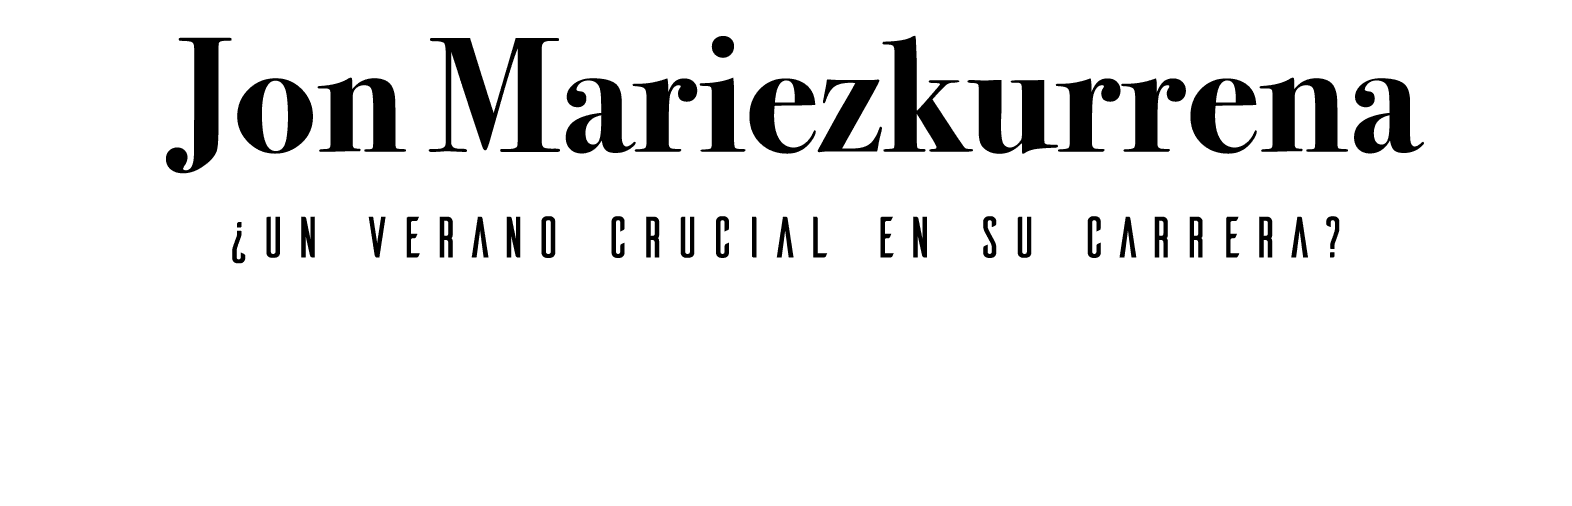 Jon Mariezkurrena  Un verano crucial en su carrera 